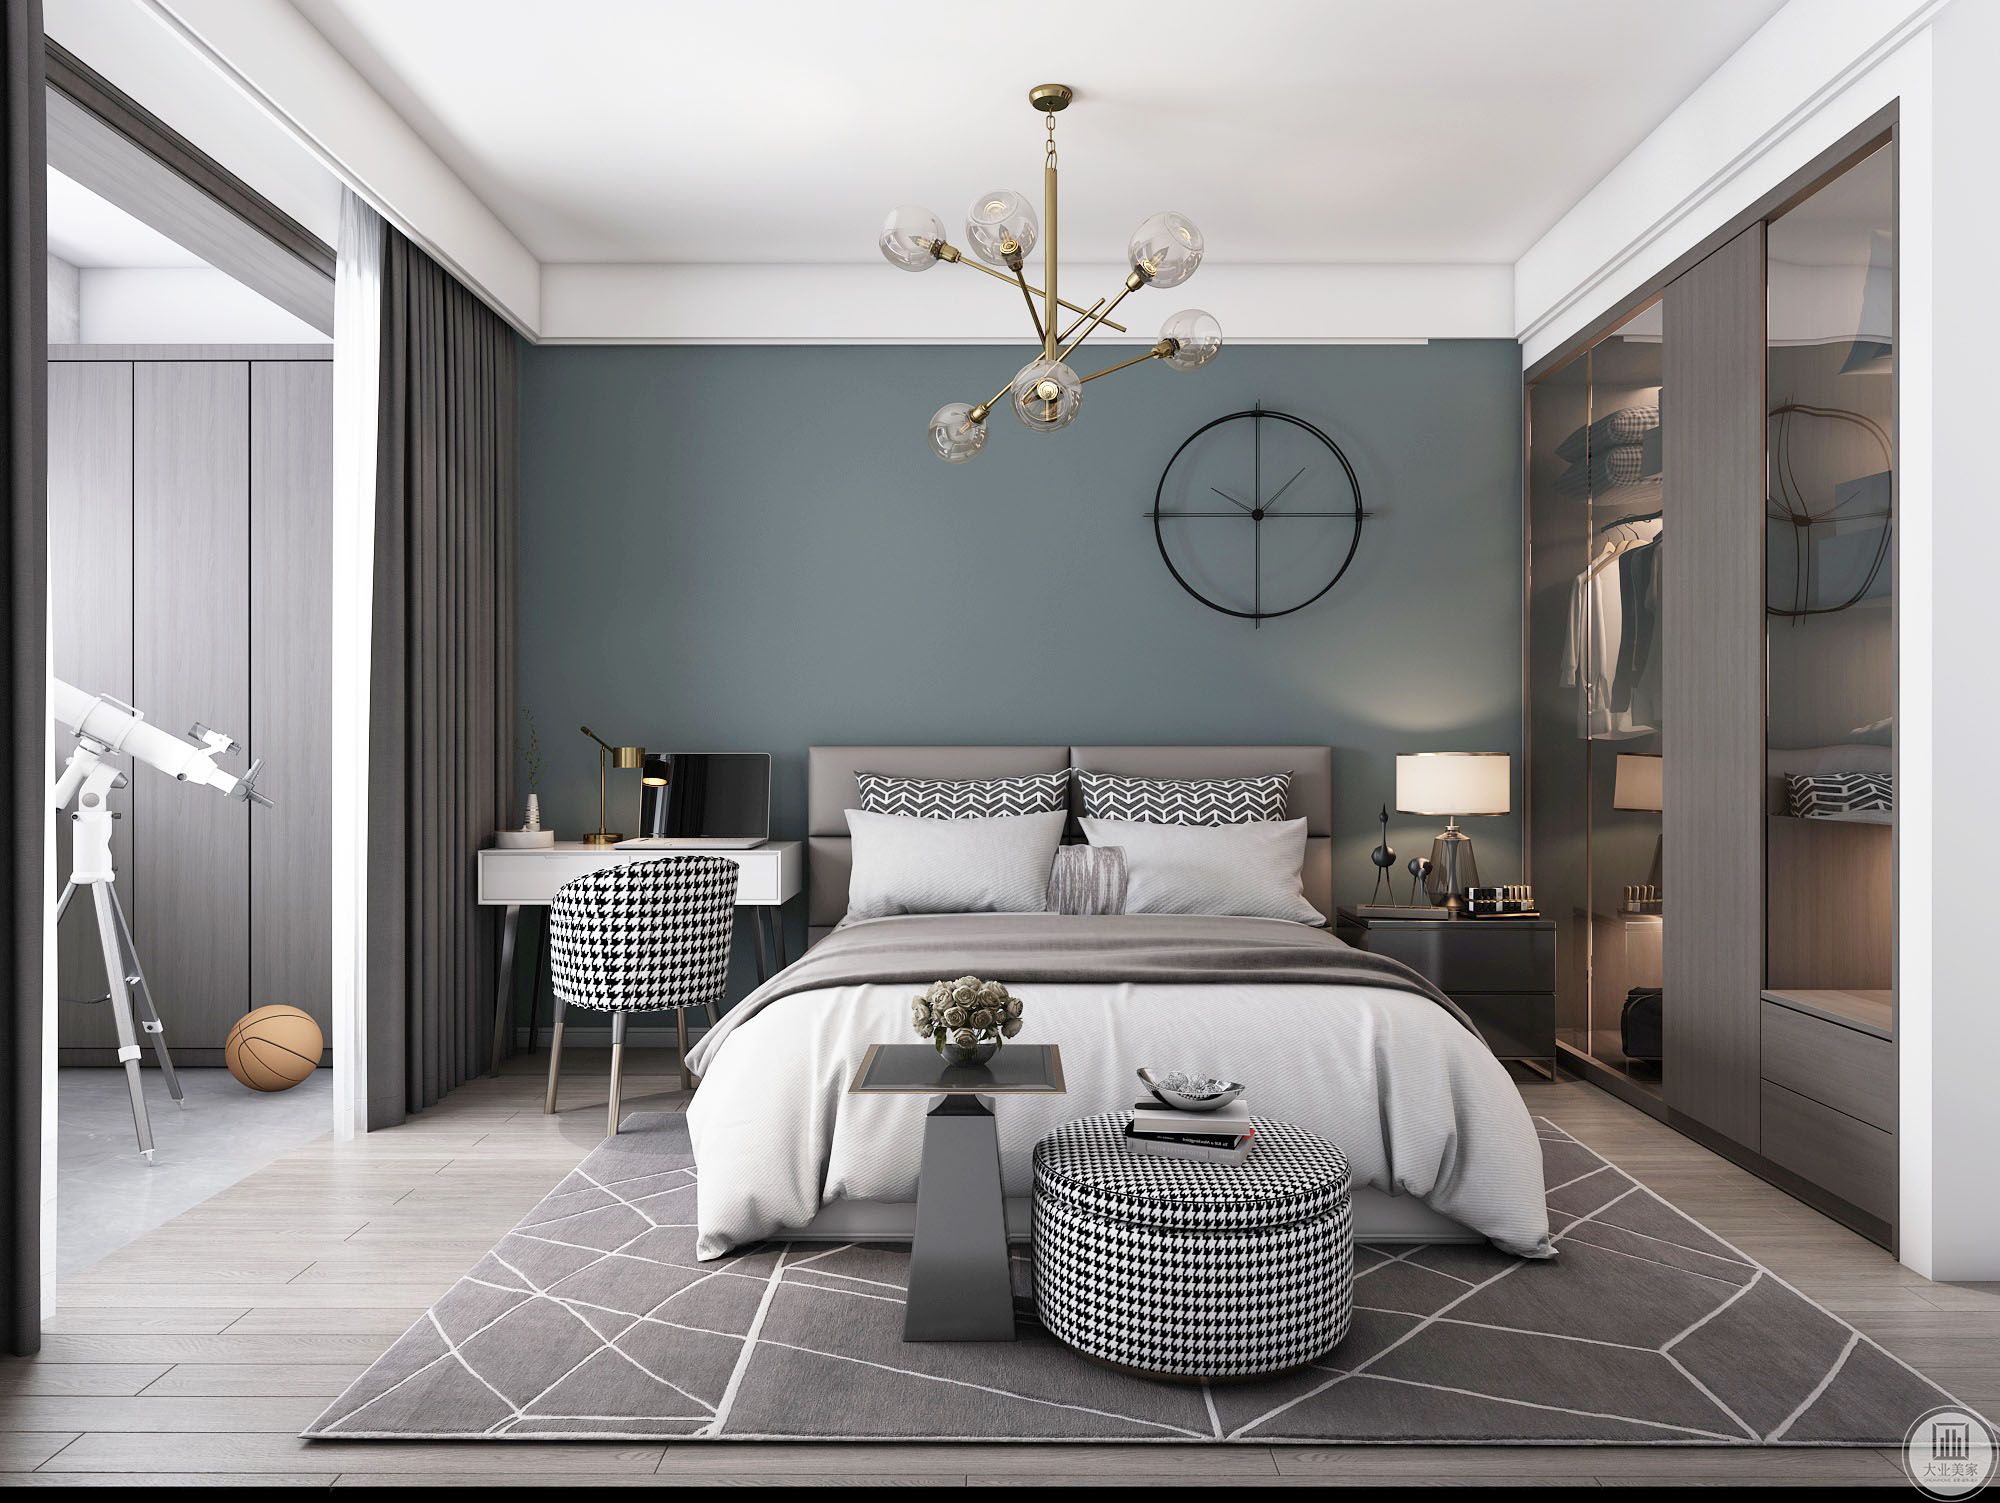 卧室背景墙用灰蓝色乳胶漆简单装饰，且将一侧床头柜用梳妆台取代，实用美观